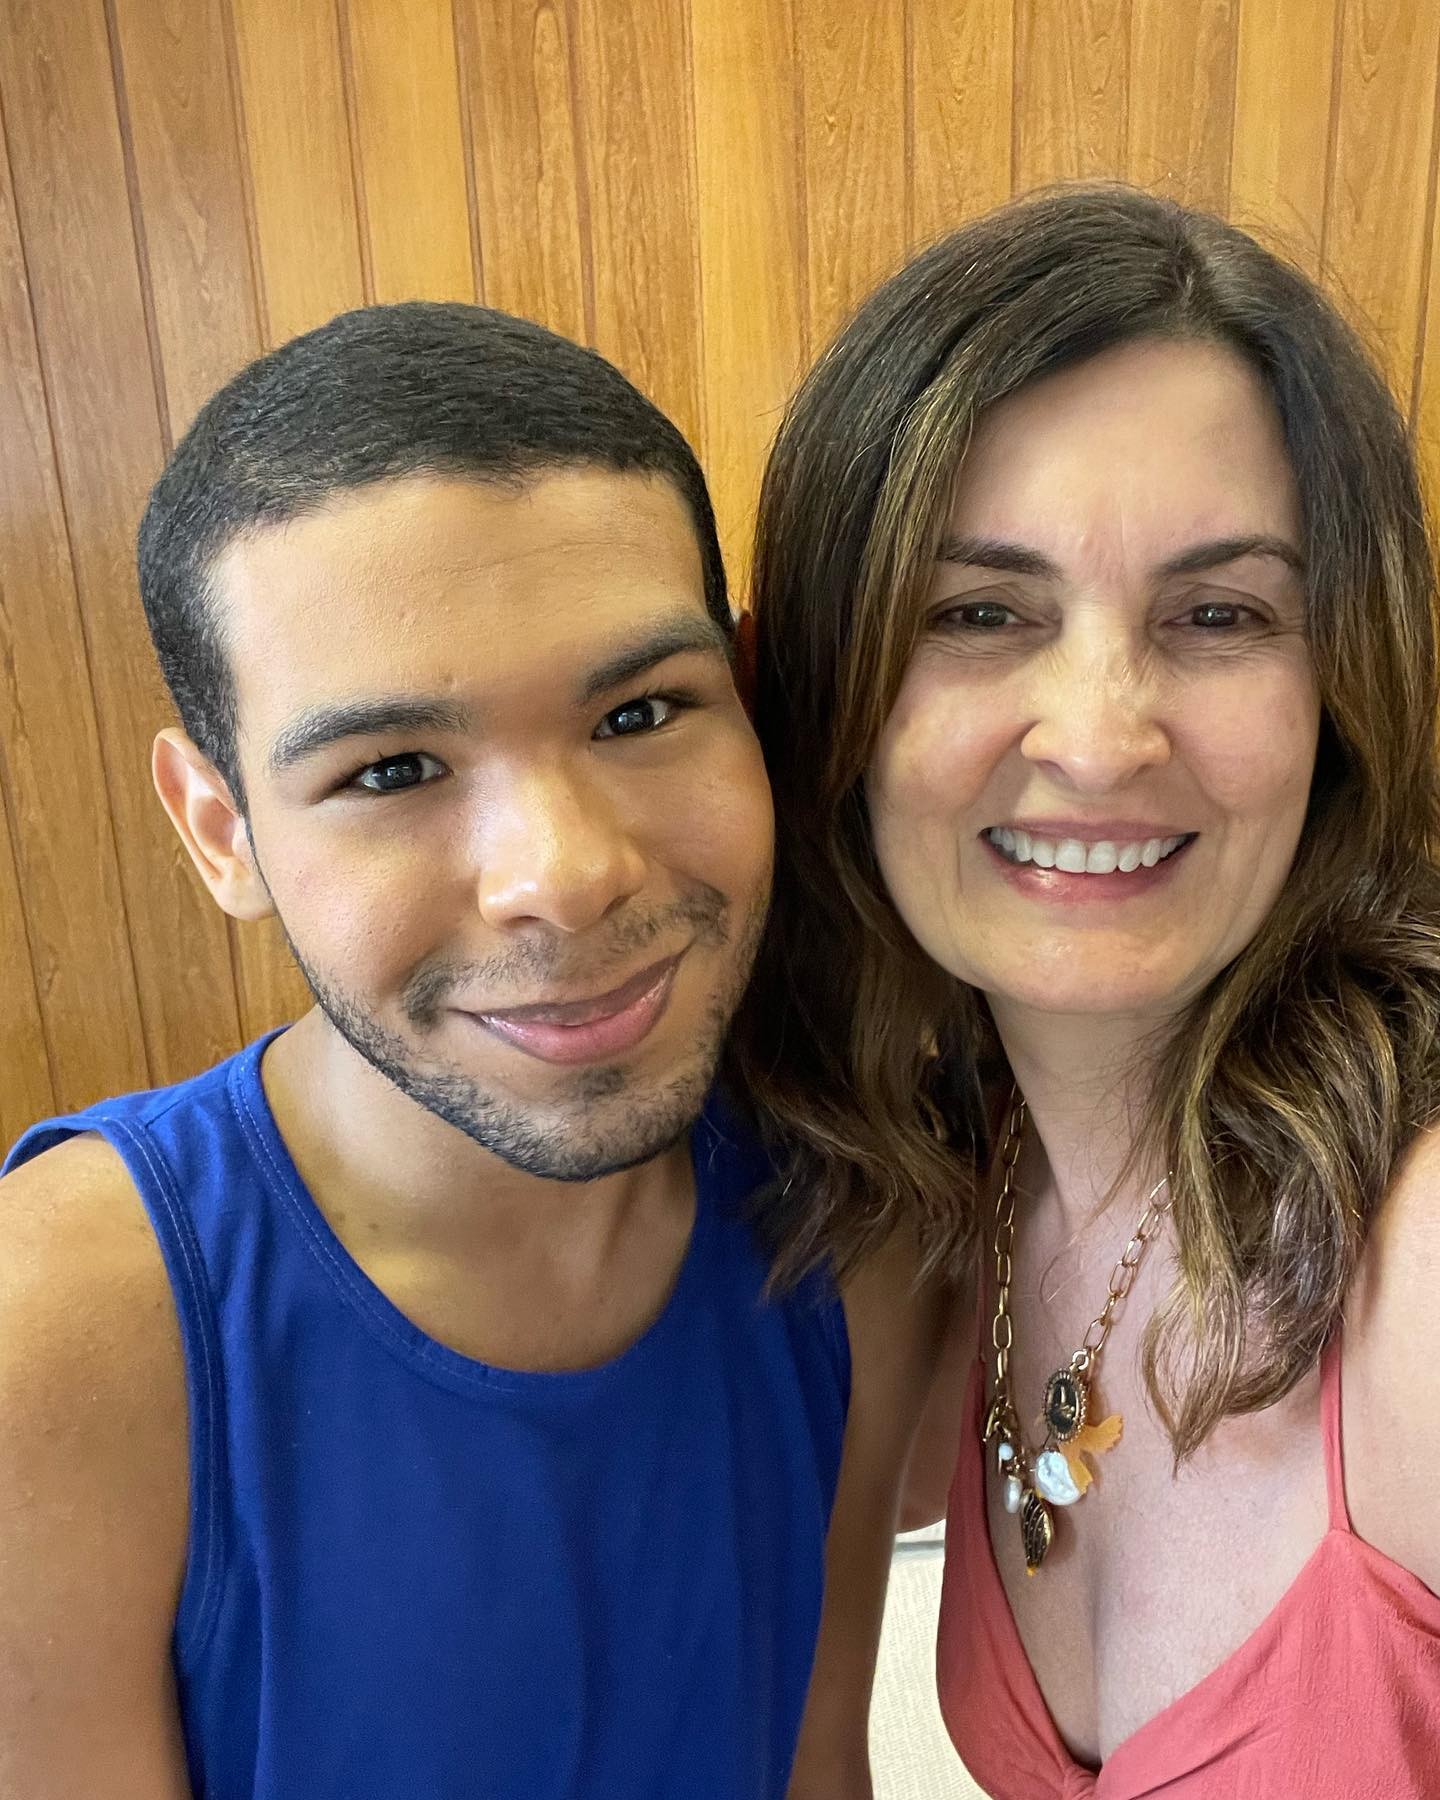 Fátima Bernardes encontra Viny durante teste de covid-19 e deseja: 'Que a vida sorria para ele' (Foto: Reprodução / Instagram)